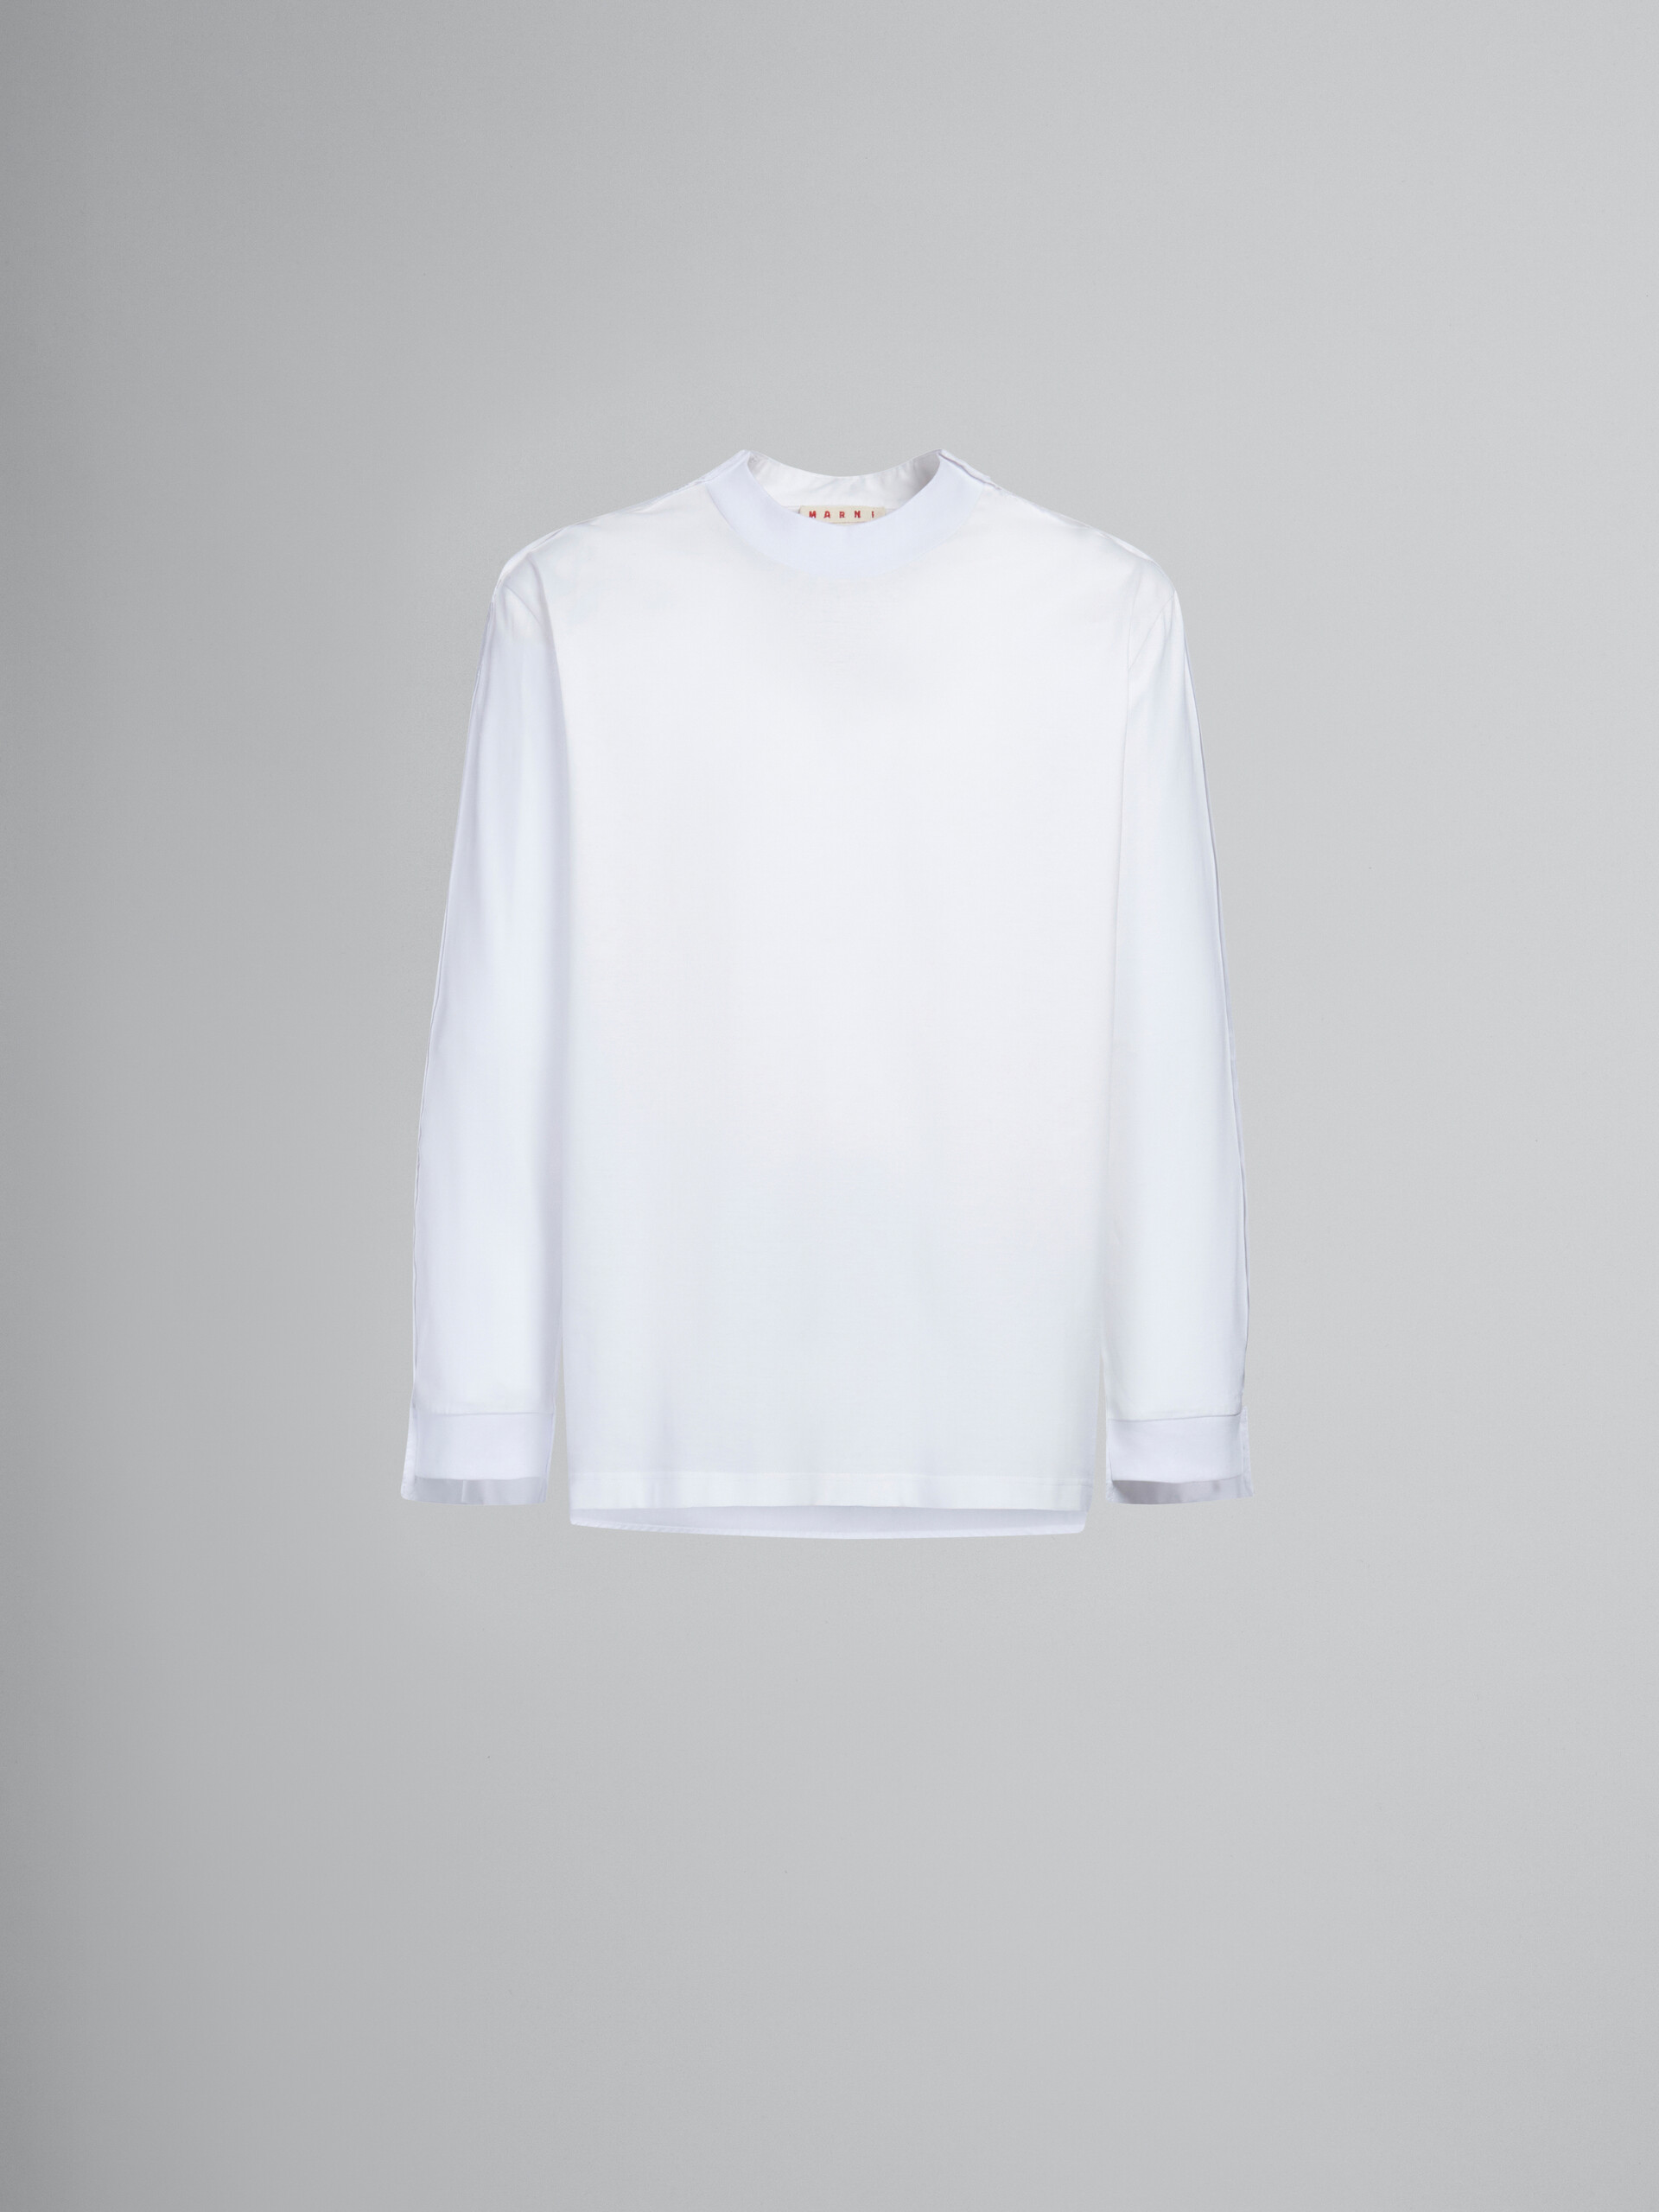 ホワイト バックヨーク オーガニックコットン 長袖Tシャツ(リラックスフィット) - Tシャツ - Image 1